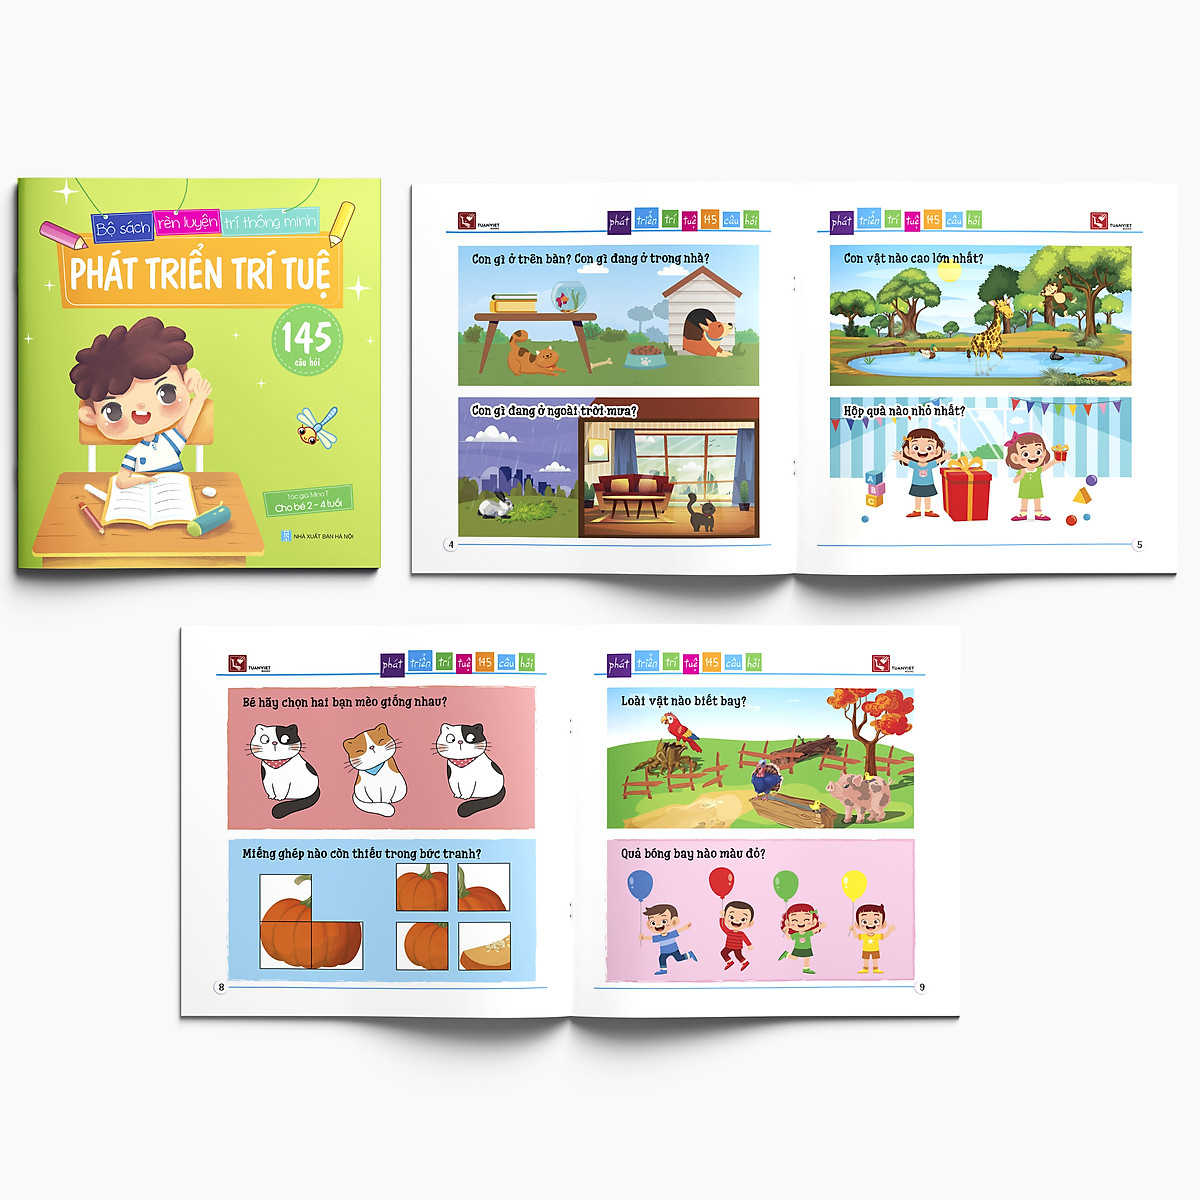 Combo 3 Cuốn sách Phát triển trí tuệ (145 câu đố) - Dành cho trẻ 2-4, 4-5, và 5-6 tuổi